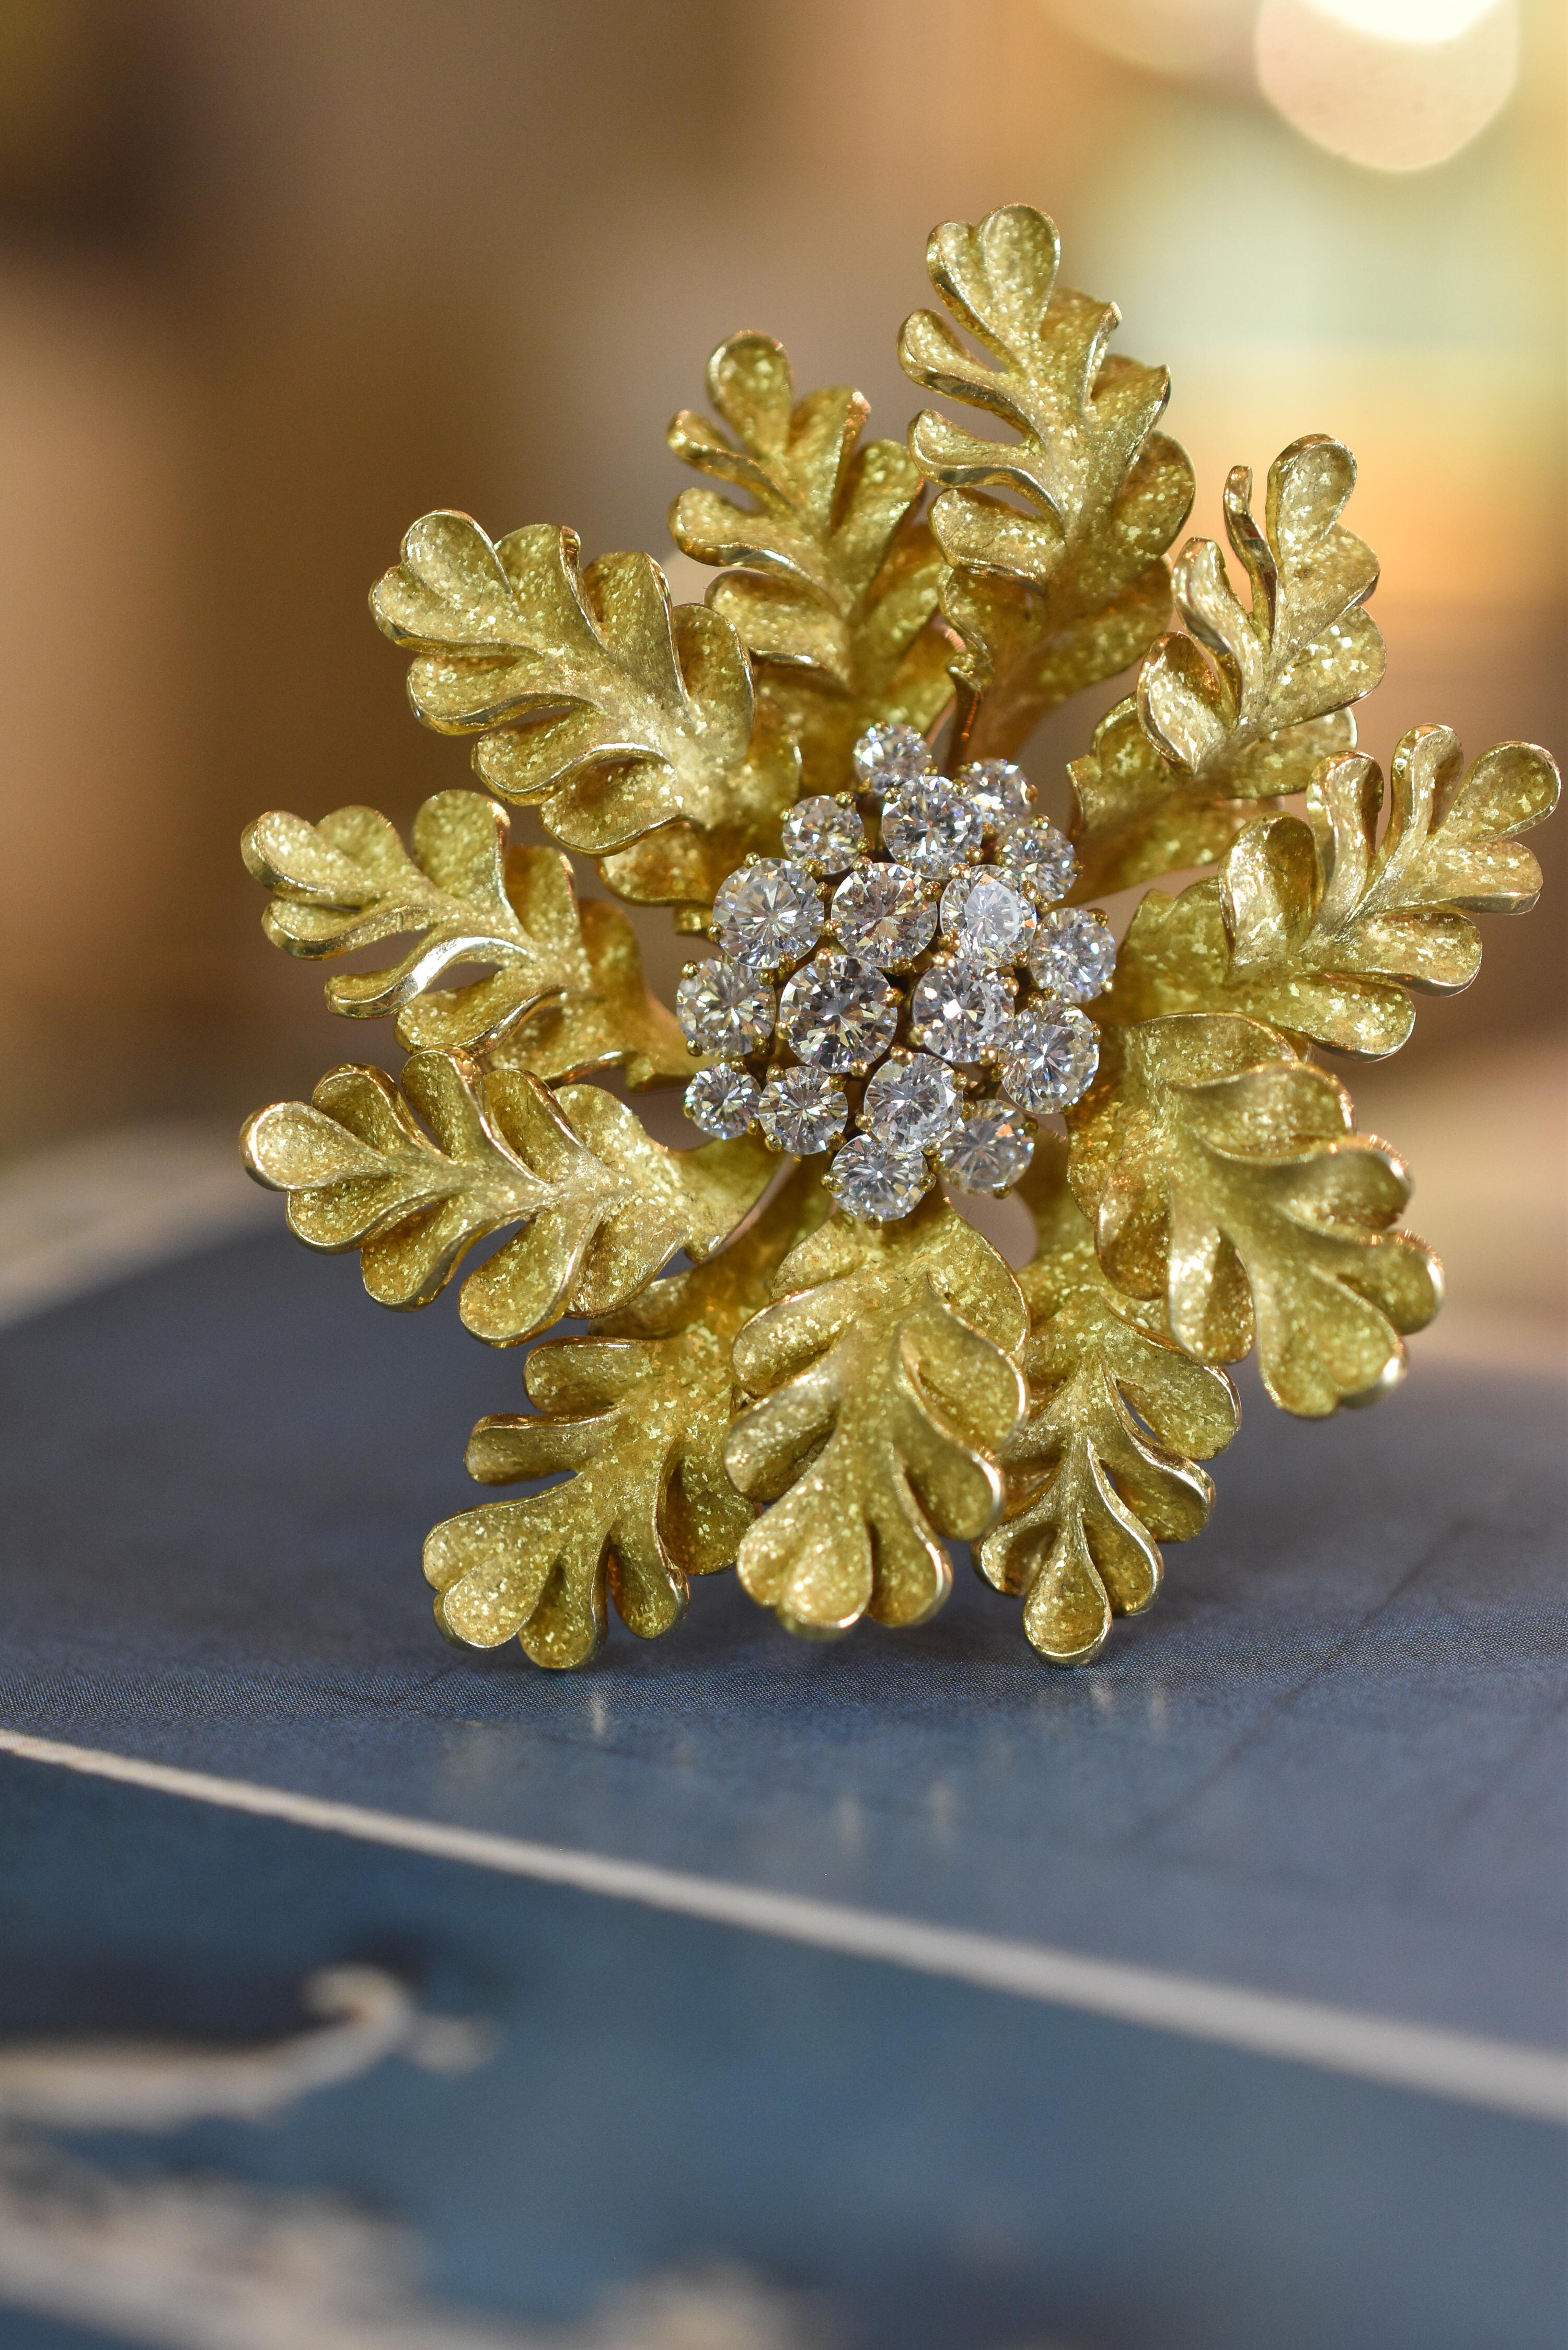 Eine einzigartige und sammelbare Bulgari Diamant und 18k Gelbgold Brosche von Blatt-Design, mit etwa 3,5 Karat von Diamanten besetzt. Hergestellt in Italien, um 1970.